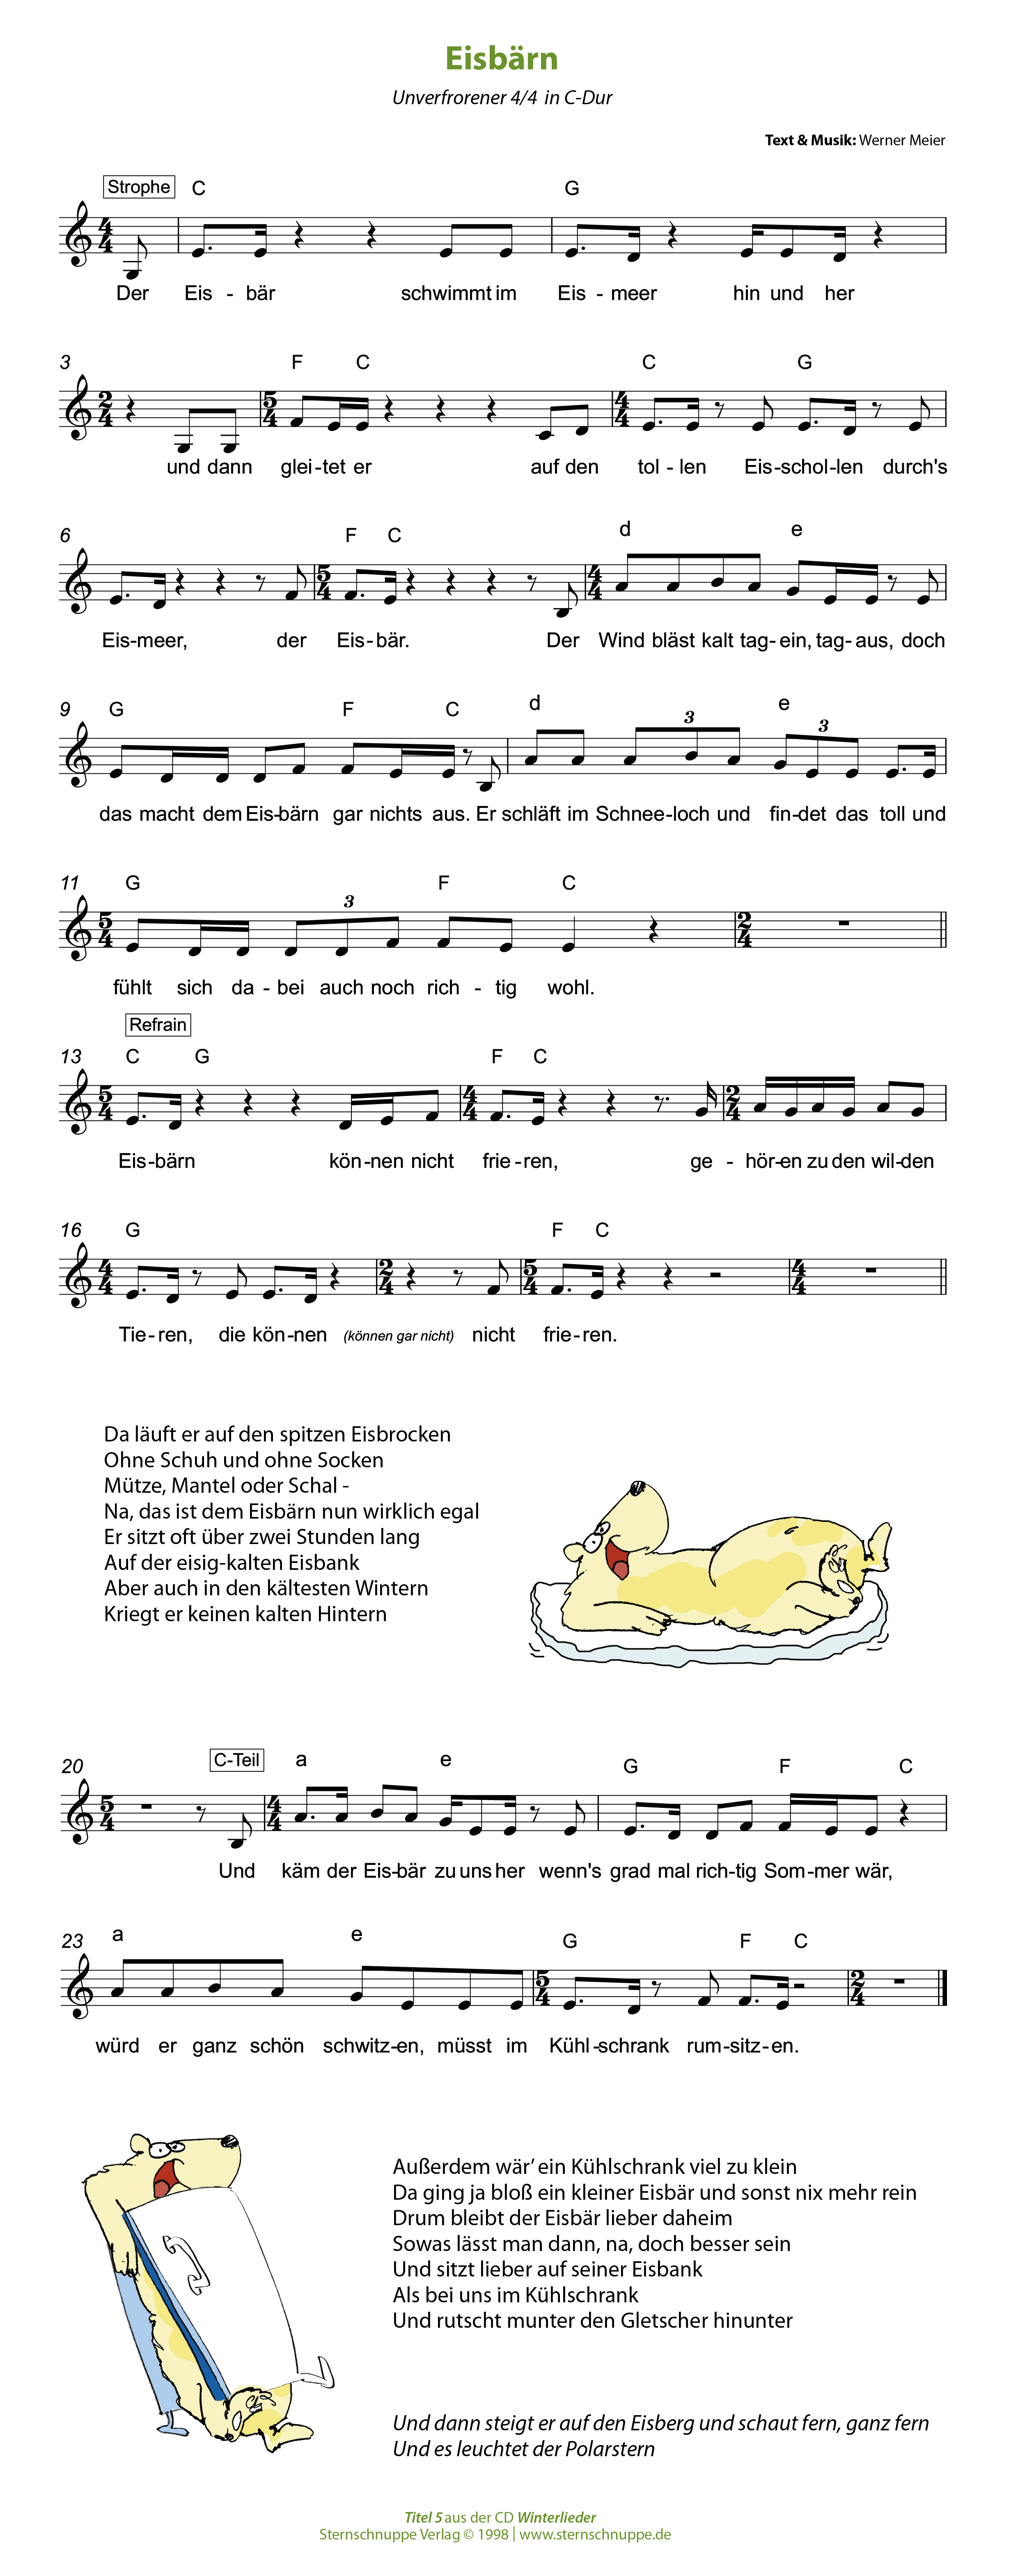 Liedtext, Akkorde und Noten vom Kinderlied Eisbärn